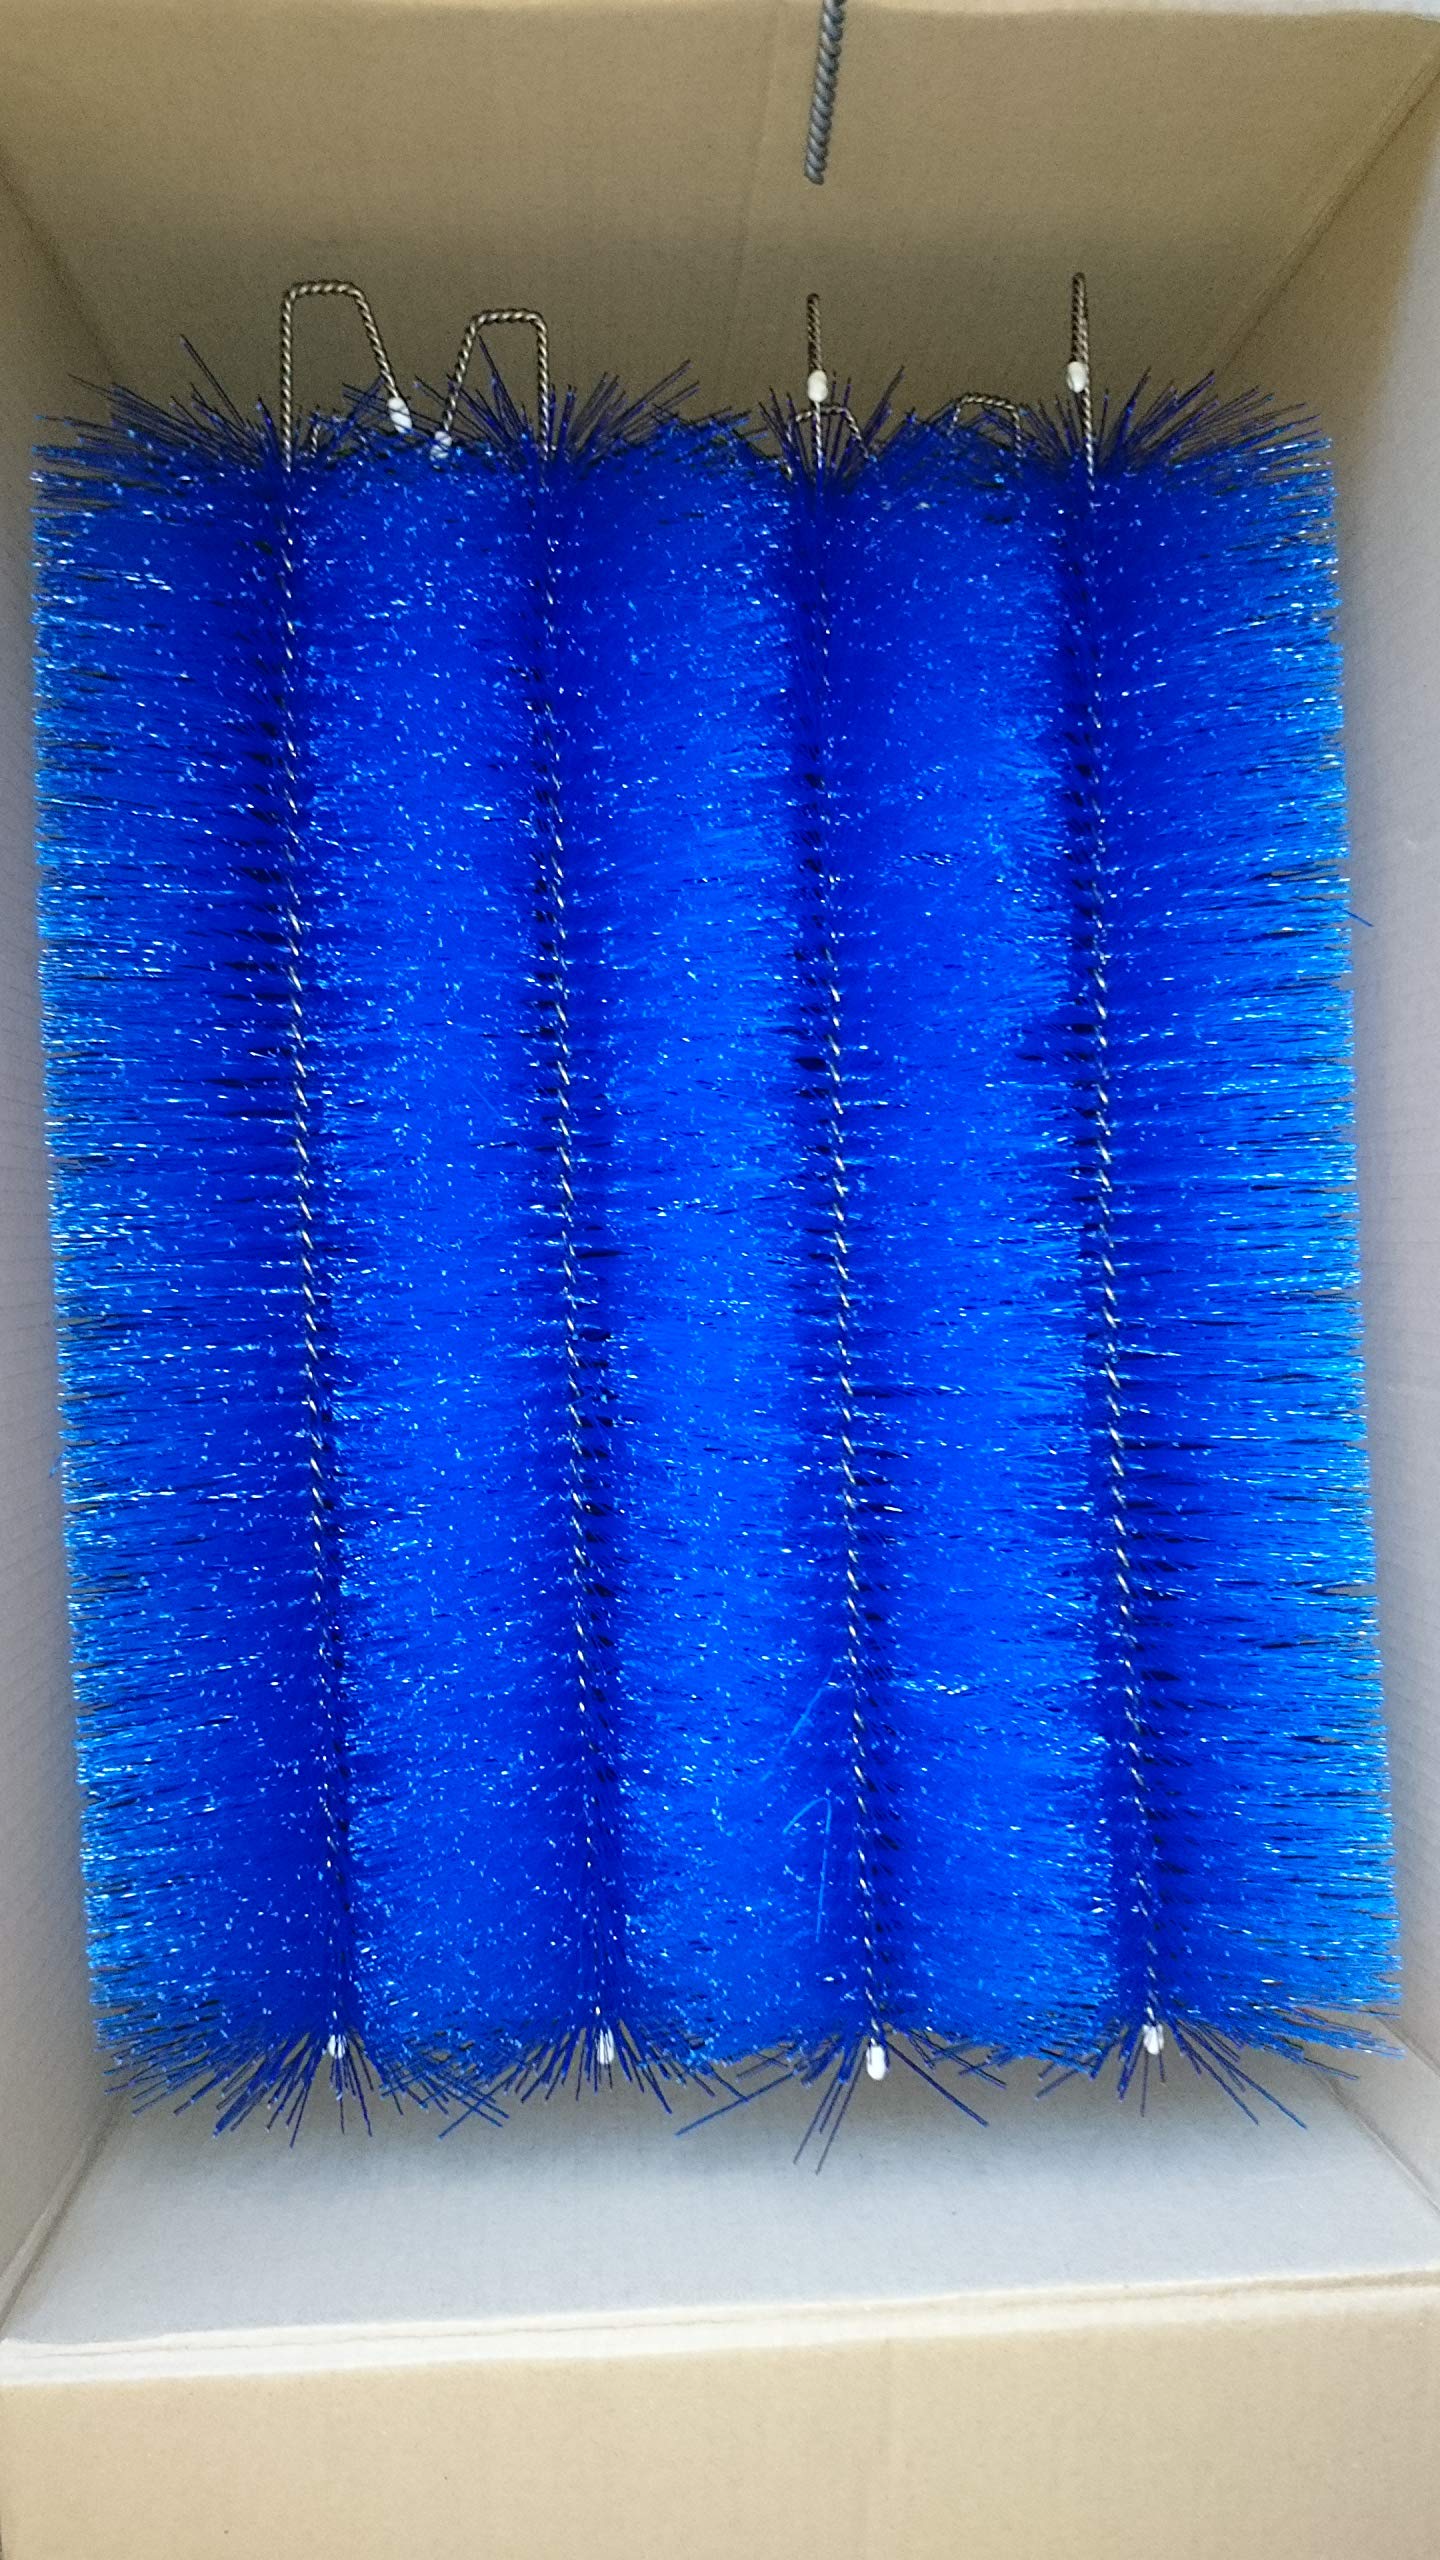 GLAMAT Filterbürsten Blau 80 cm Ø 150mm x 24 STK. (121,09 € inkl. Lieferung) Gartenteich, Filter, Filterbürste, Teichfilter